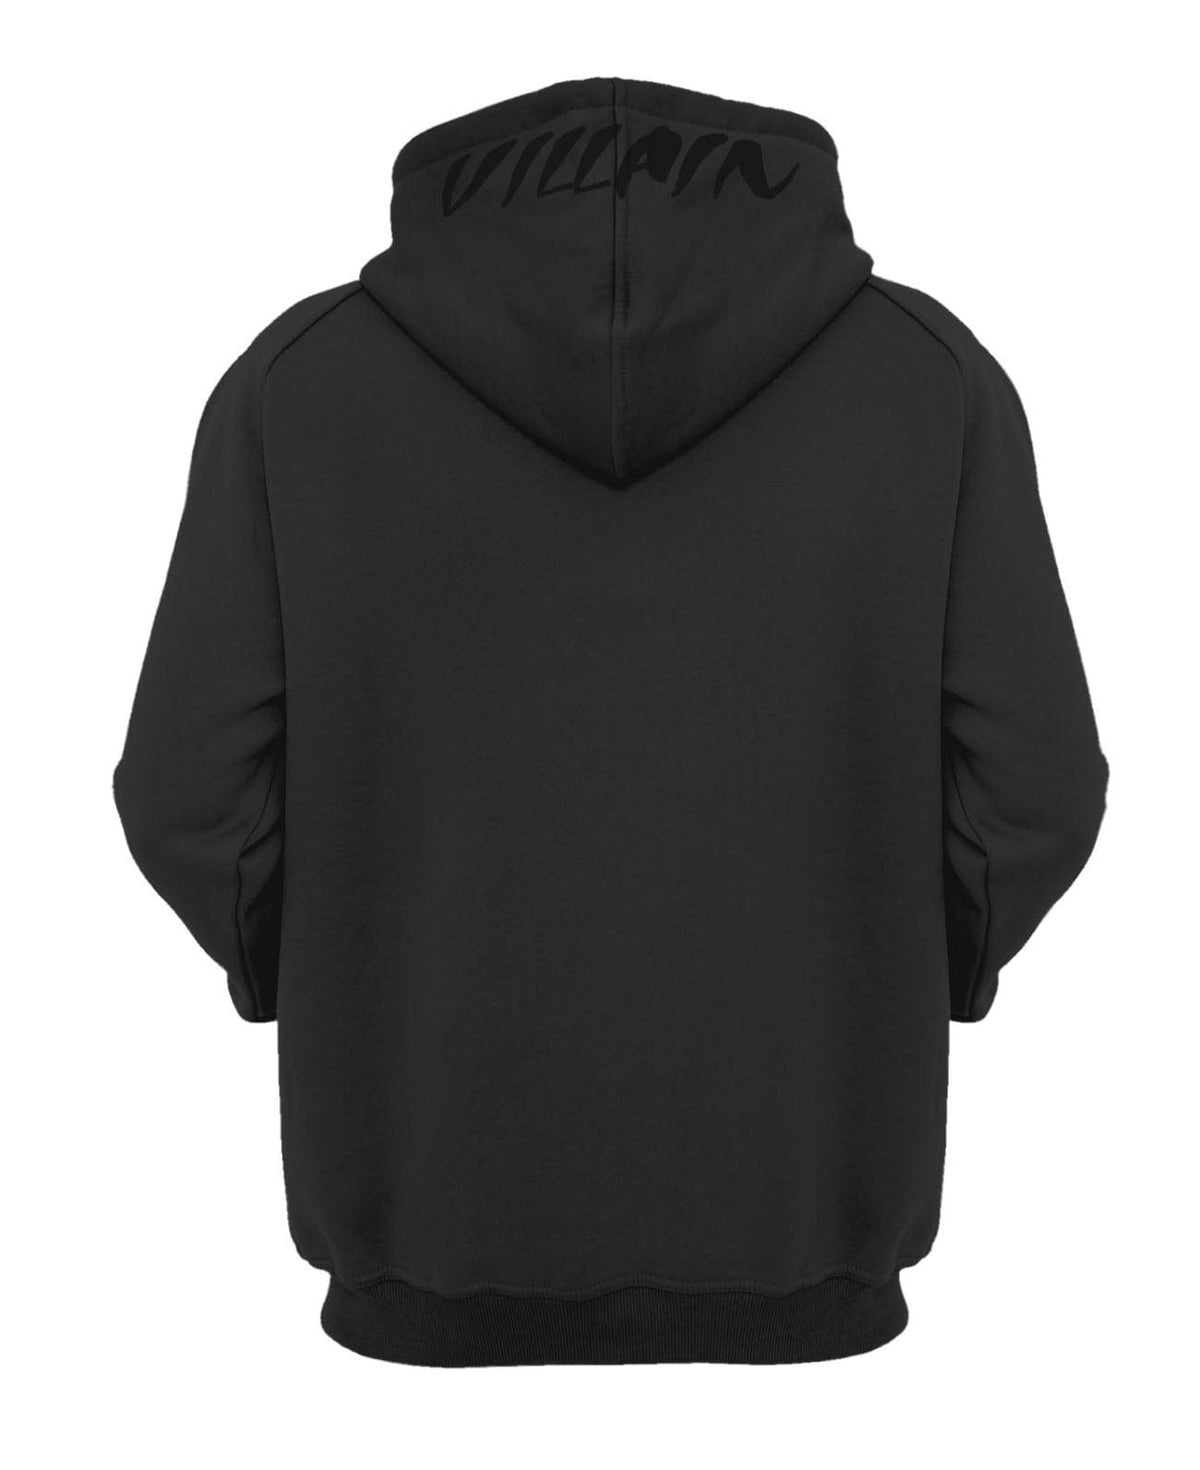 Solid Black TUFF Apocalyptic Hooded Sweatshirt TuffWraps.com